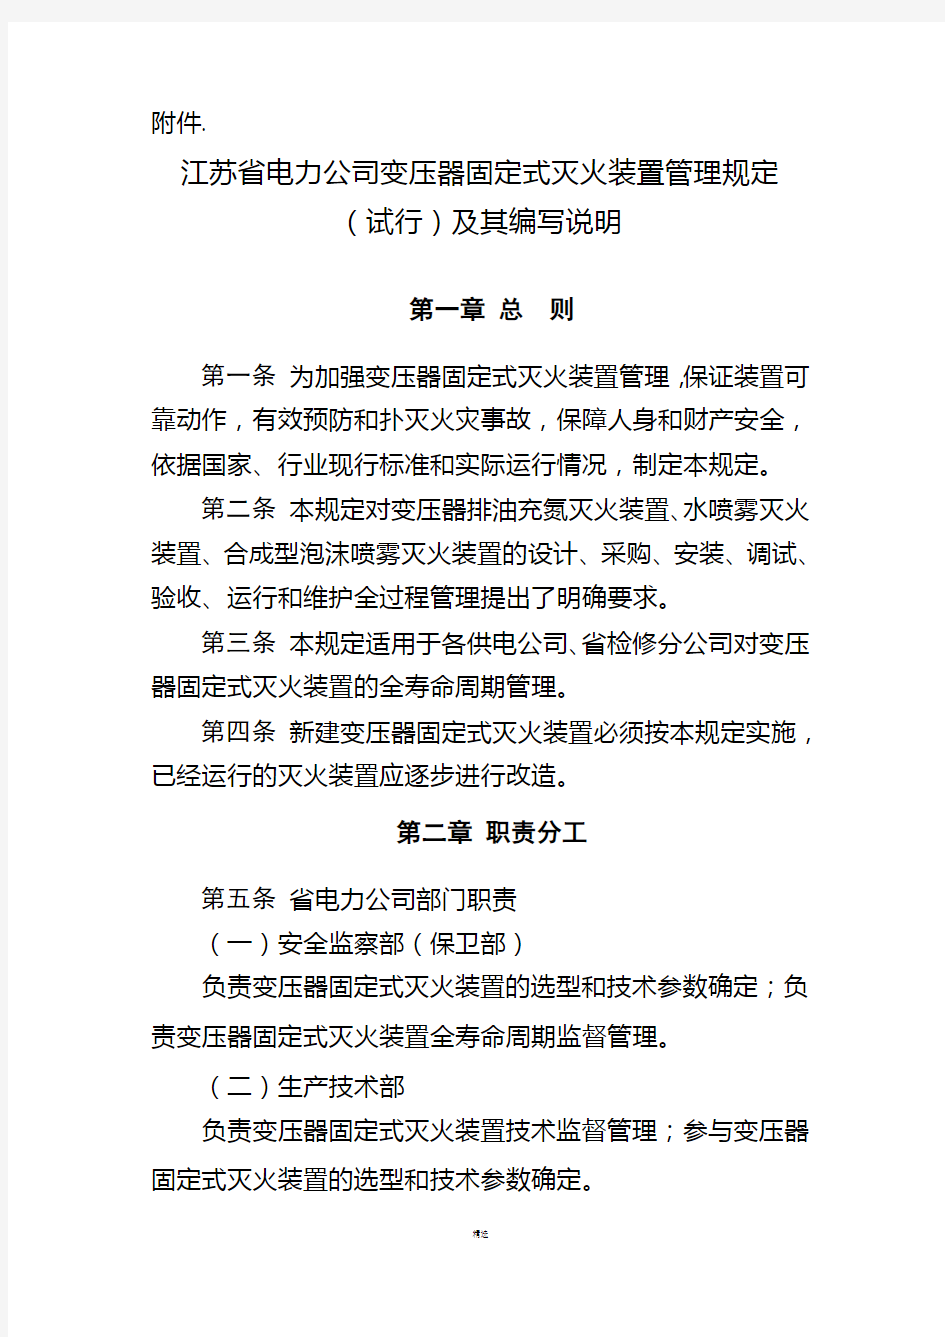 江苏省电力公司变压器固定式灭火装置管理规定(试行)